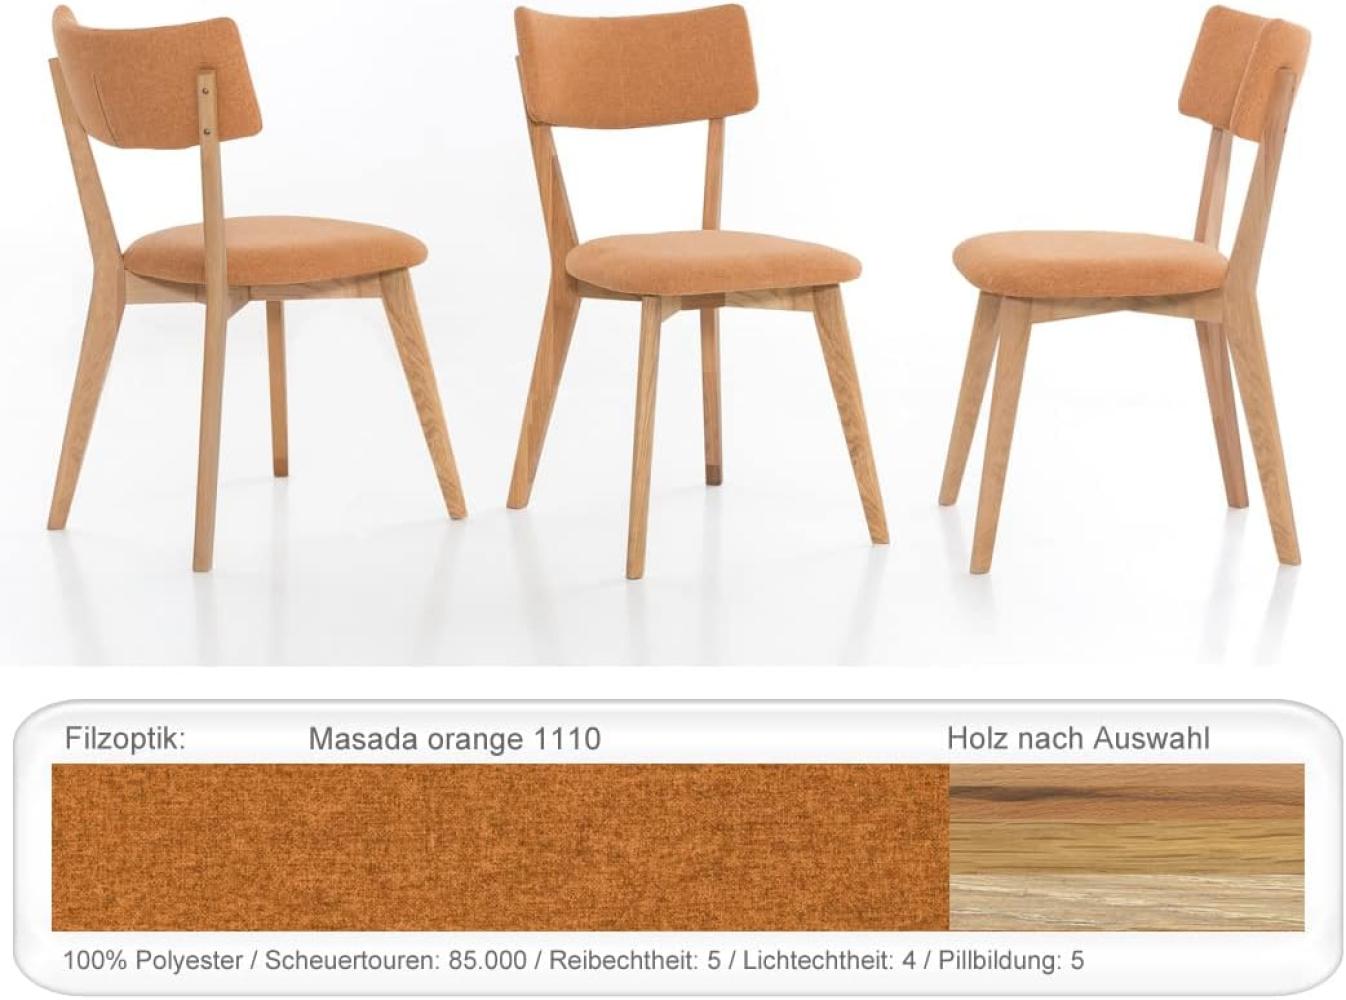 4x Holzstuhl Norina 32 Polsterstuhl Esszimmerstuhl Küchenstuhl Variant Eiche natur geölt, Masada orange Bild 1